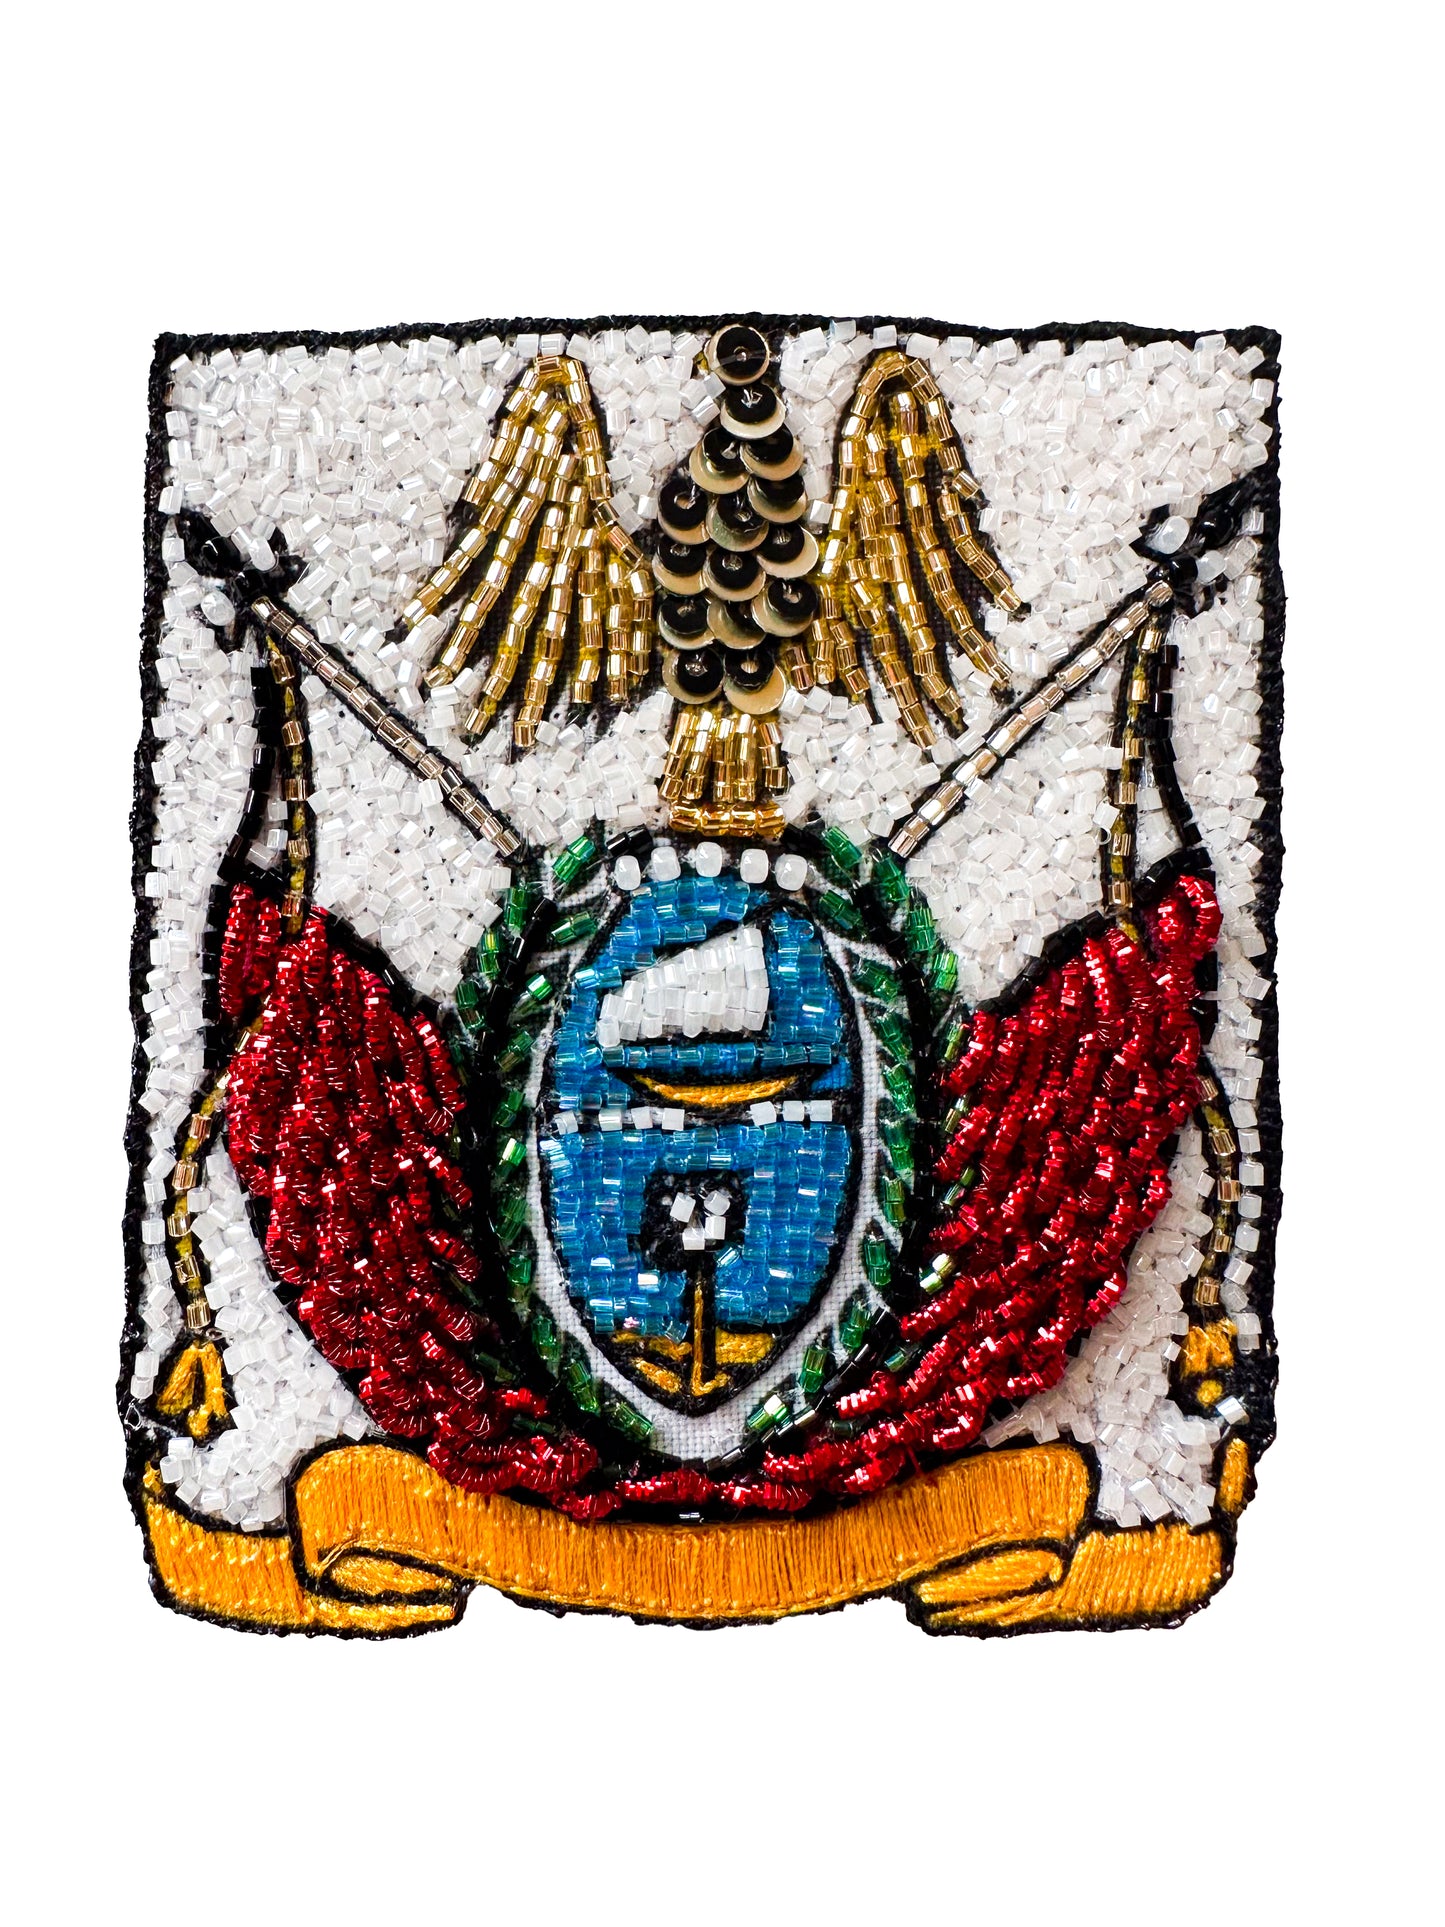 Dubai Emblem